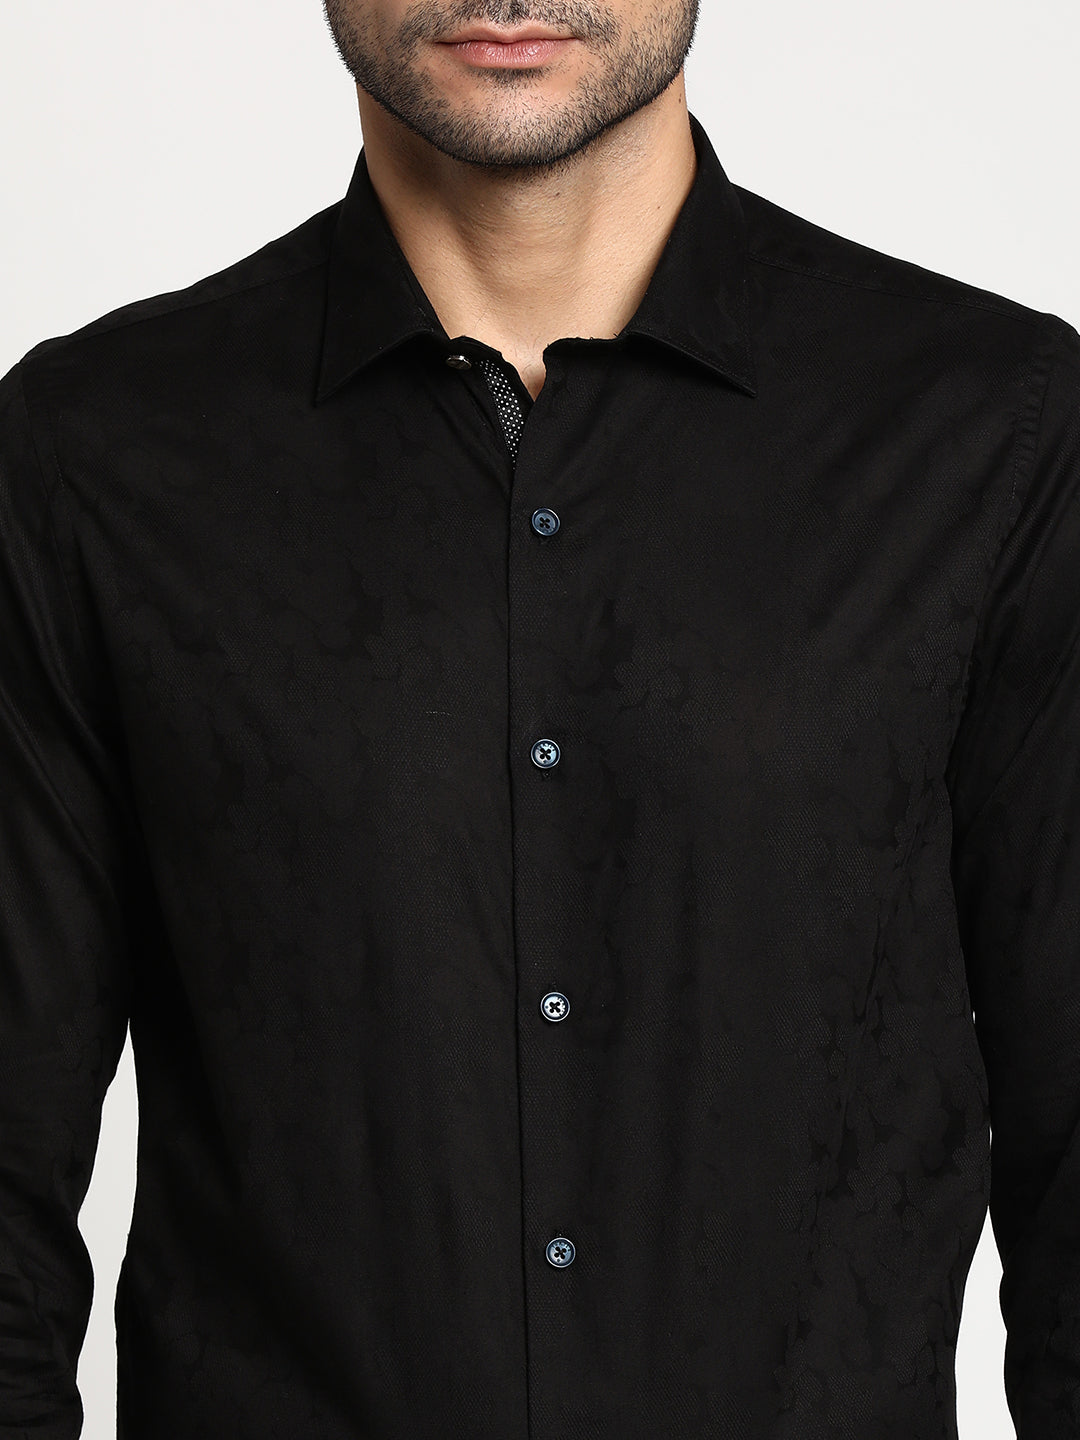 Cotton Black Slim Fit Self Design Formal Shirt